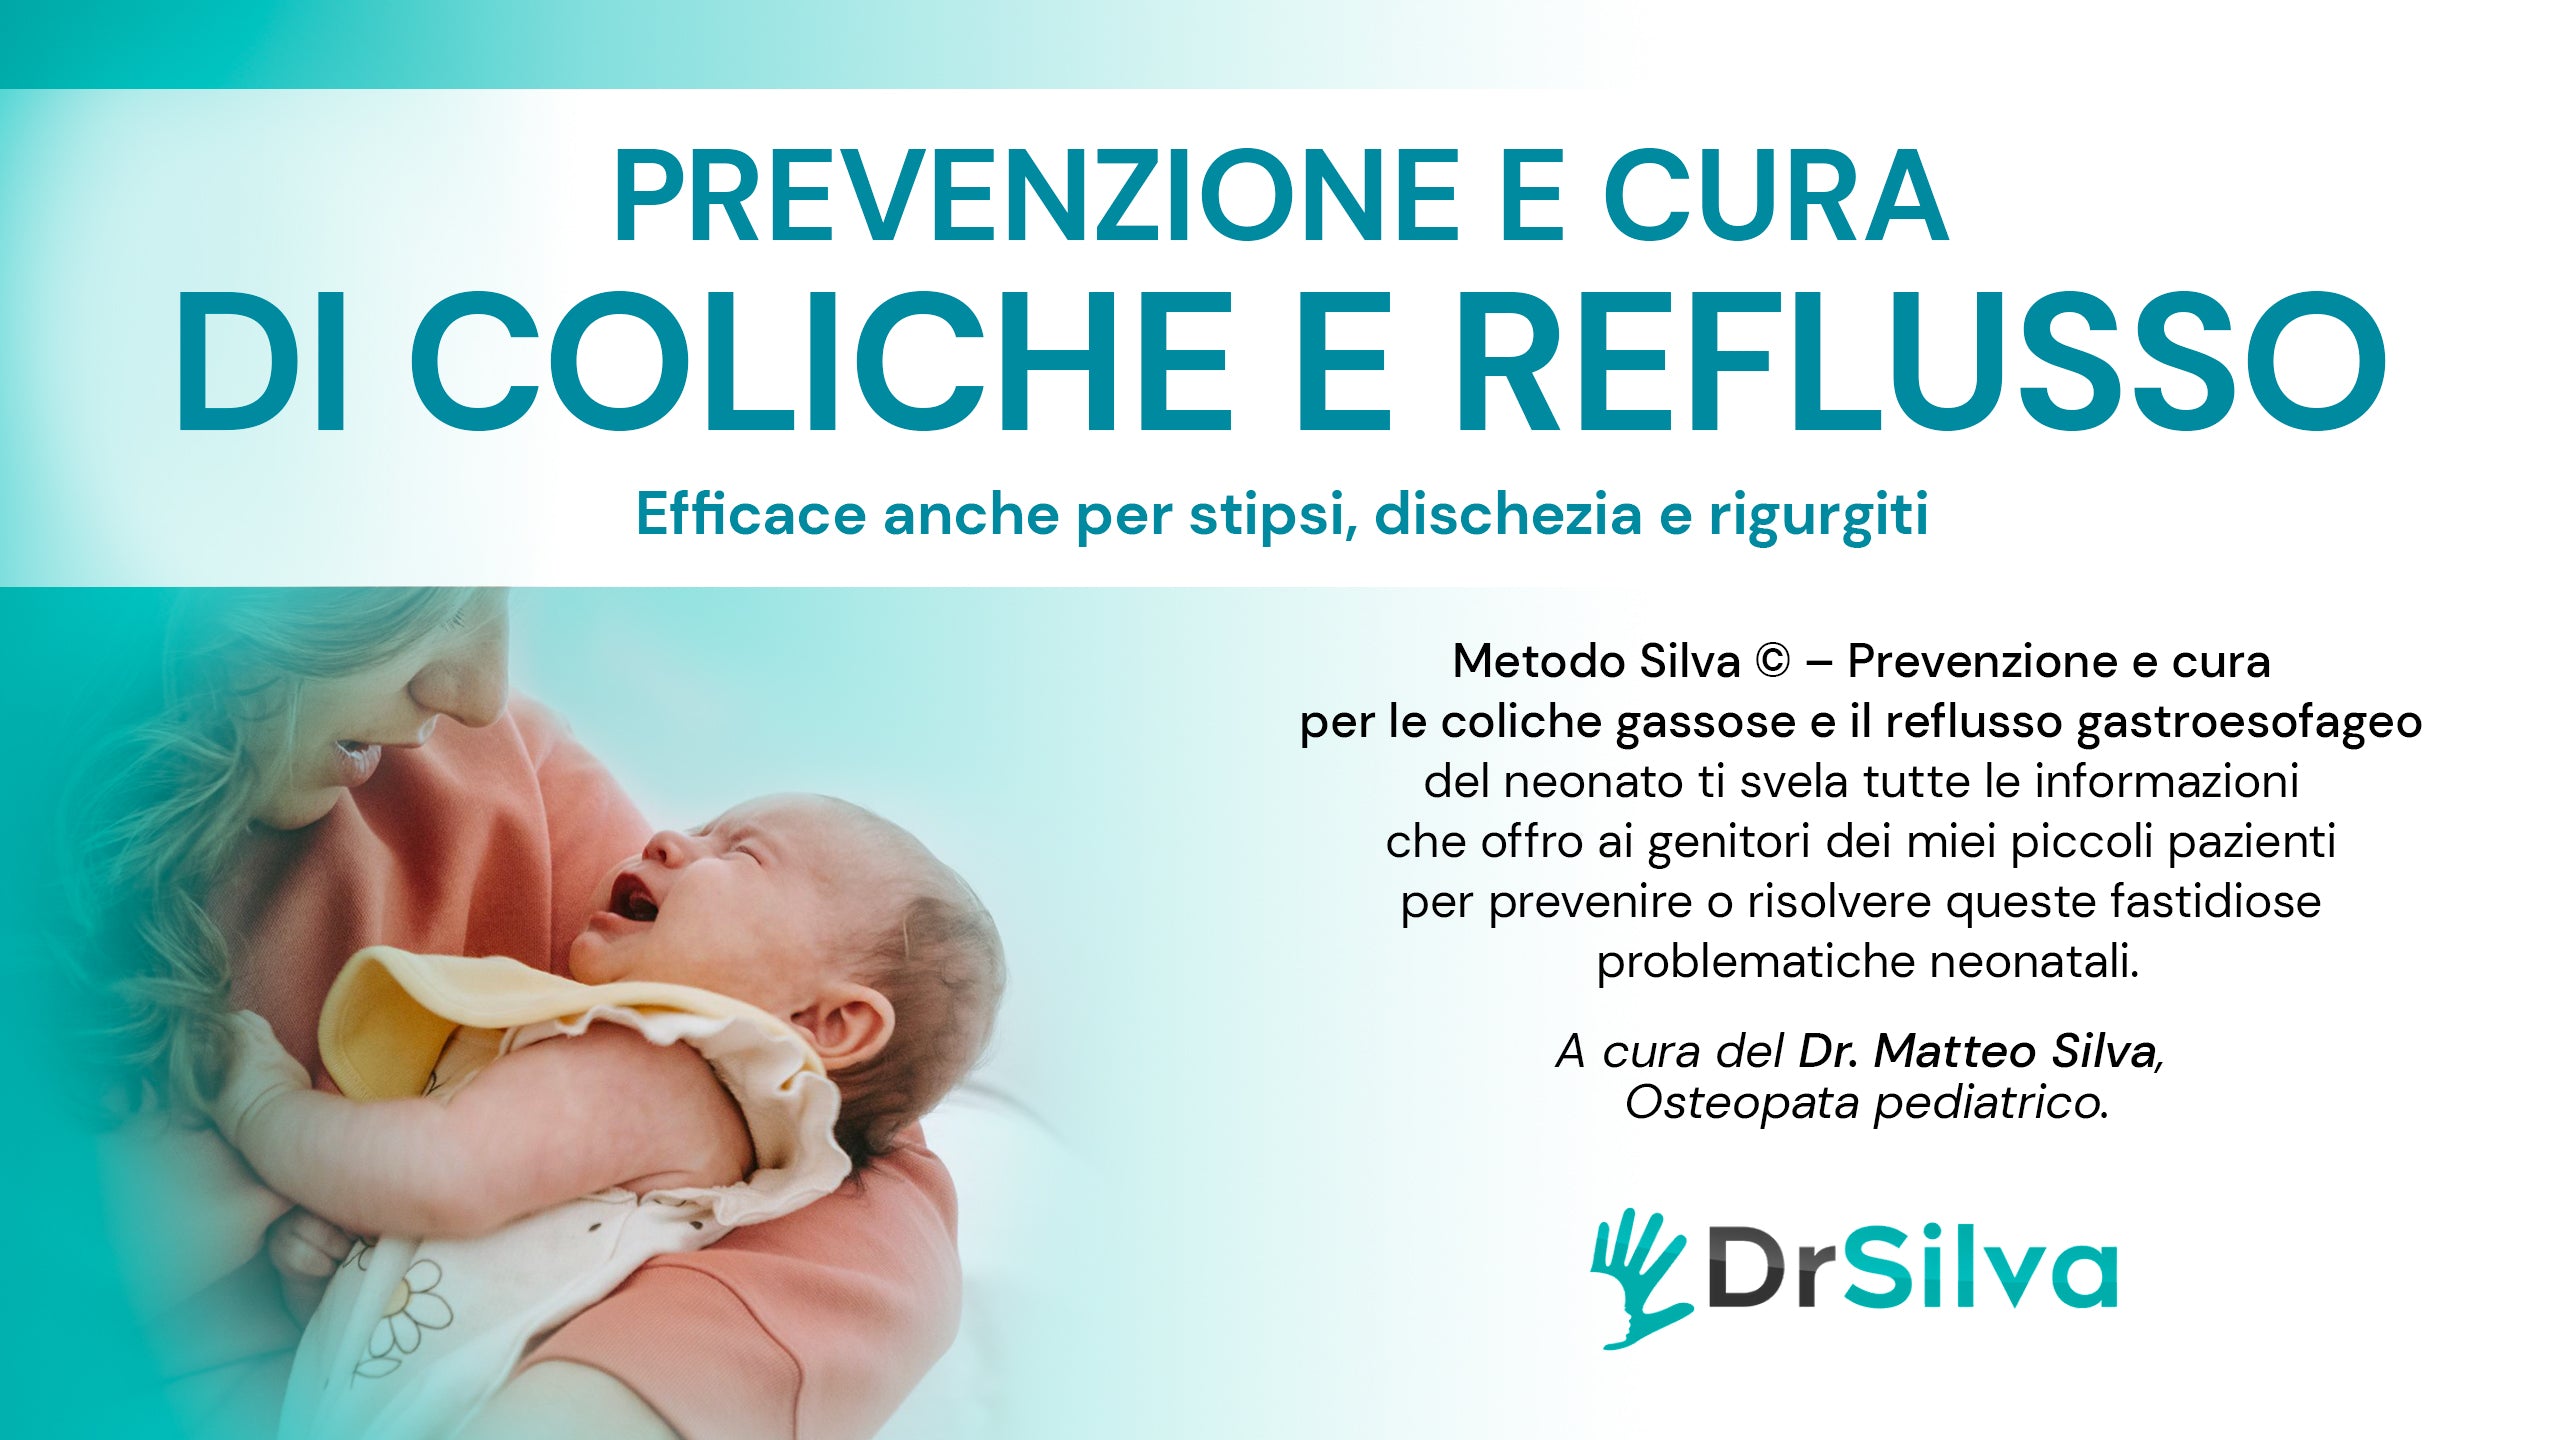 Carica il video: come prevenire e curare le coliche gassose del neonato e il reflusso gastropesofageo